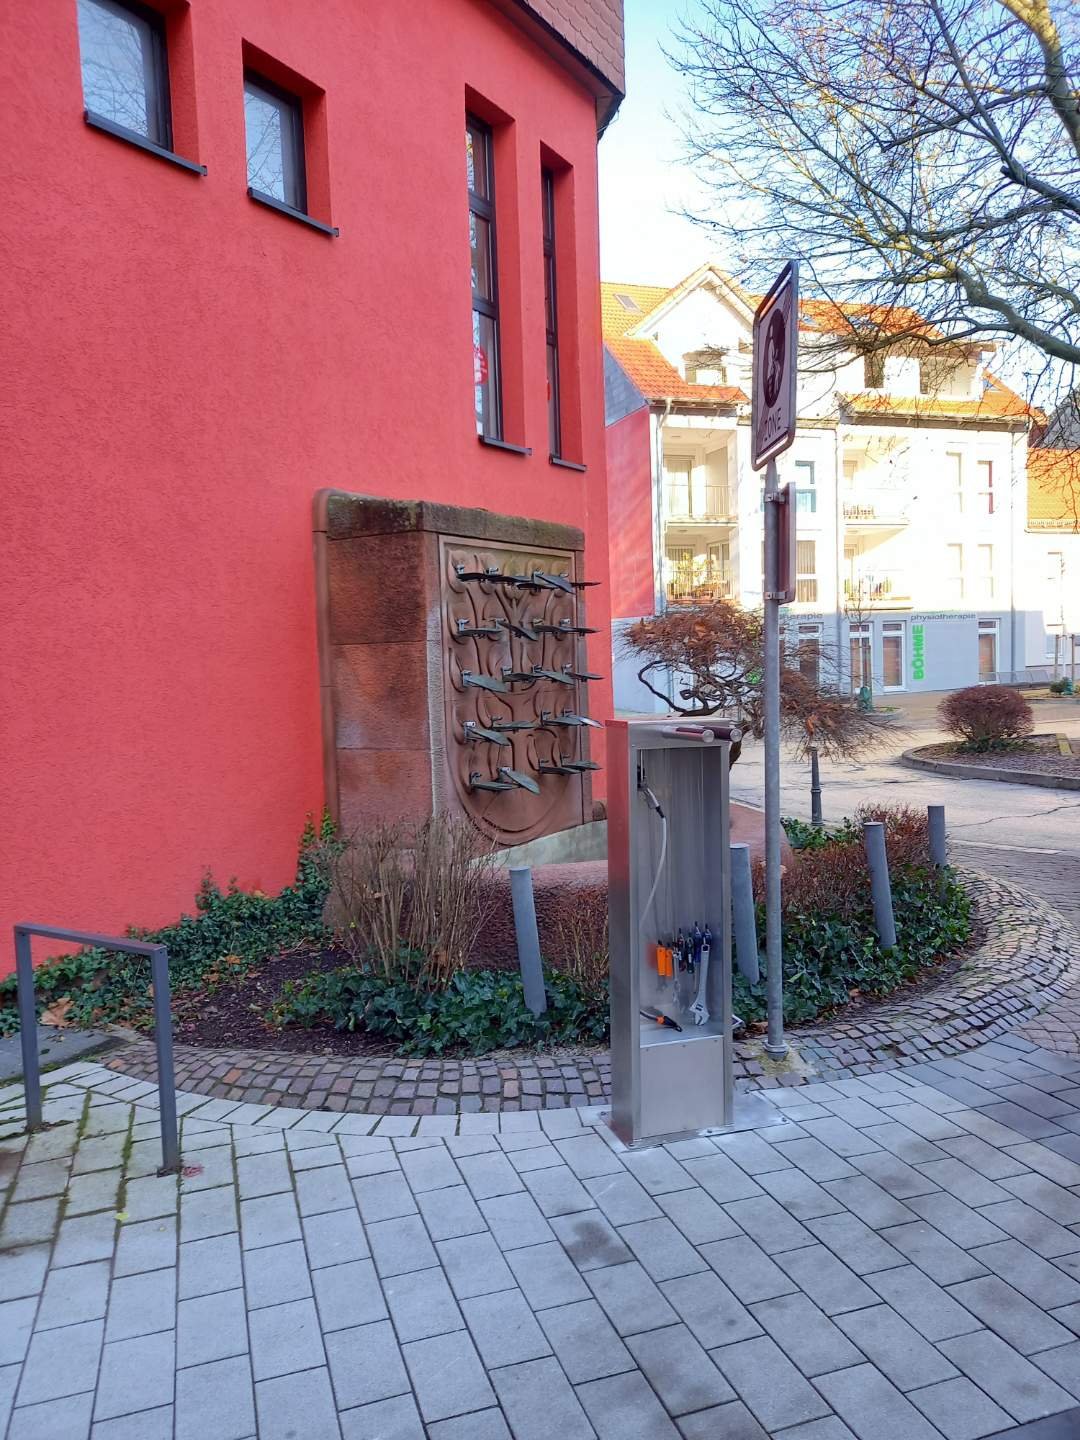 Fahrradreparaturstation am La-Baule-Platz in der Nähe des Historischen Marktplatzes Homburg